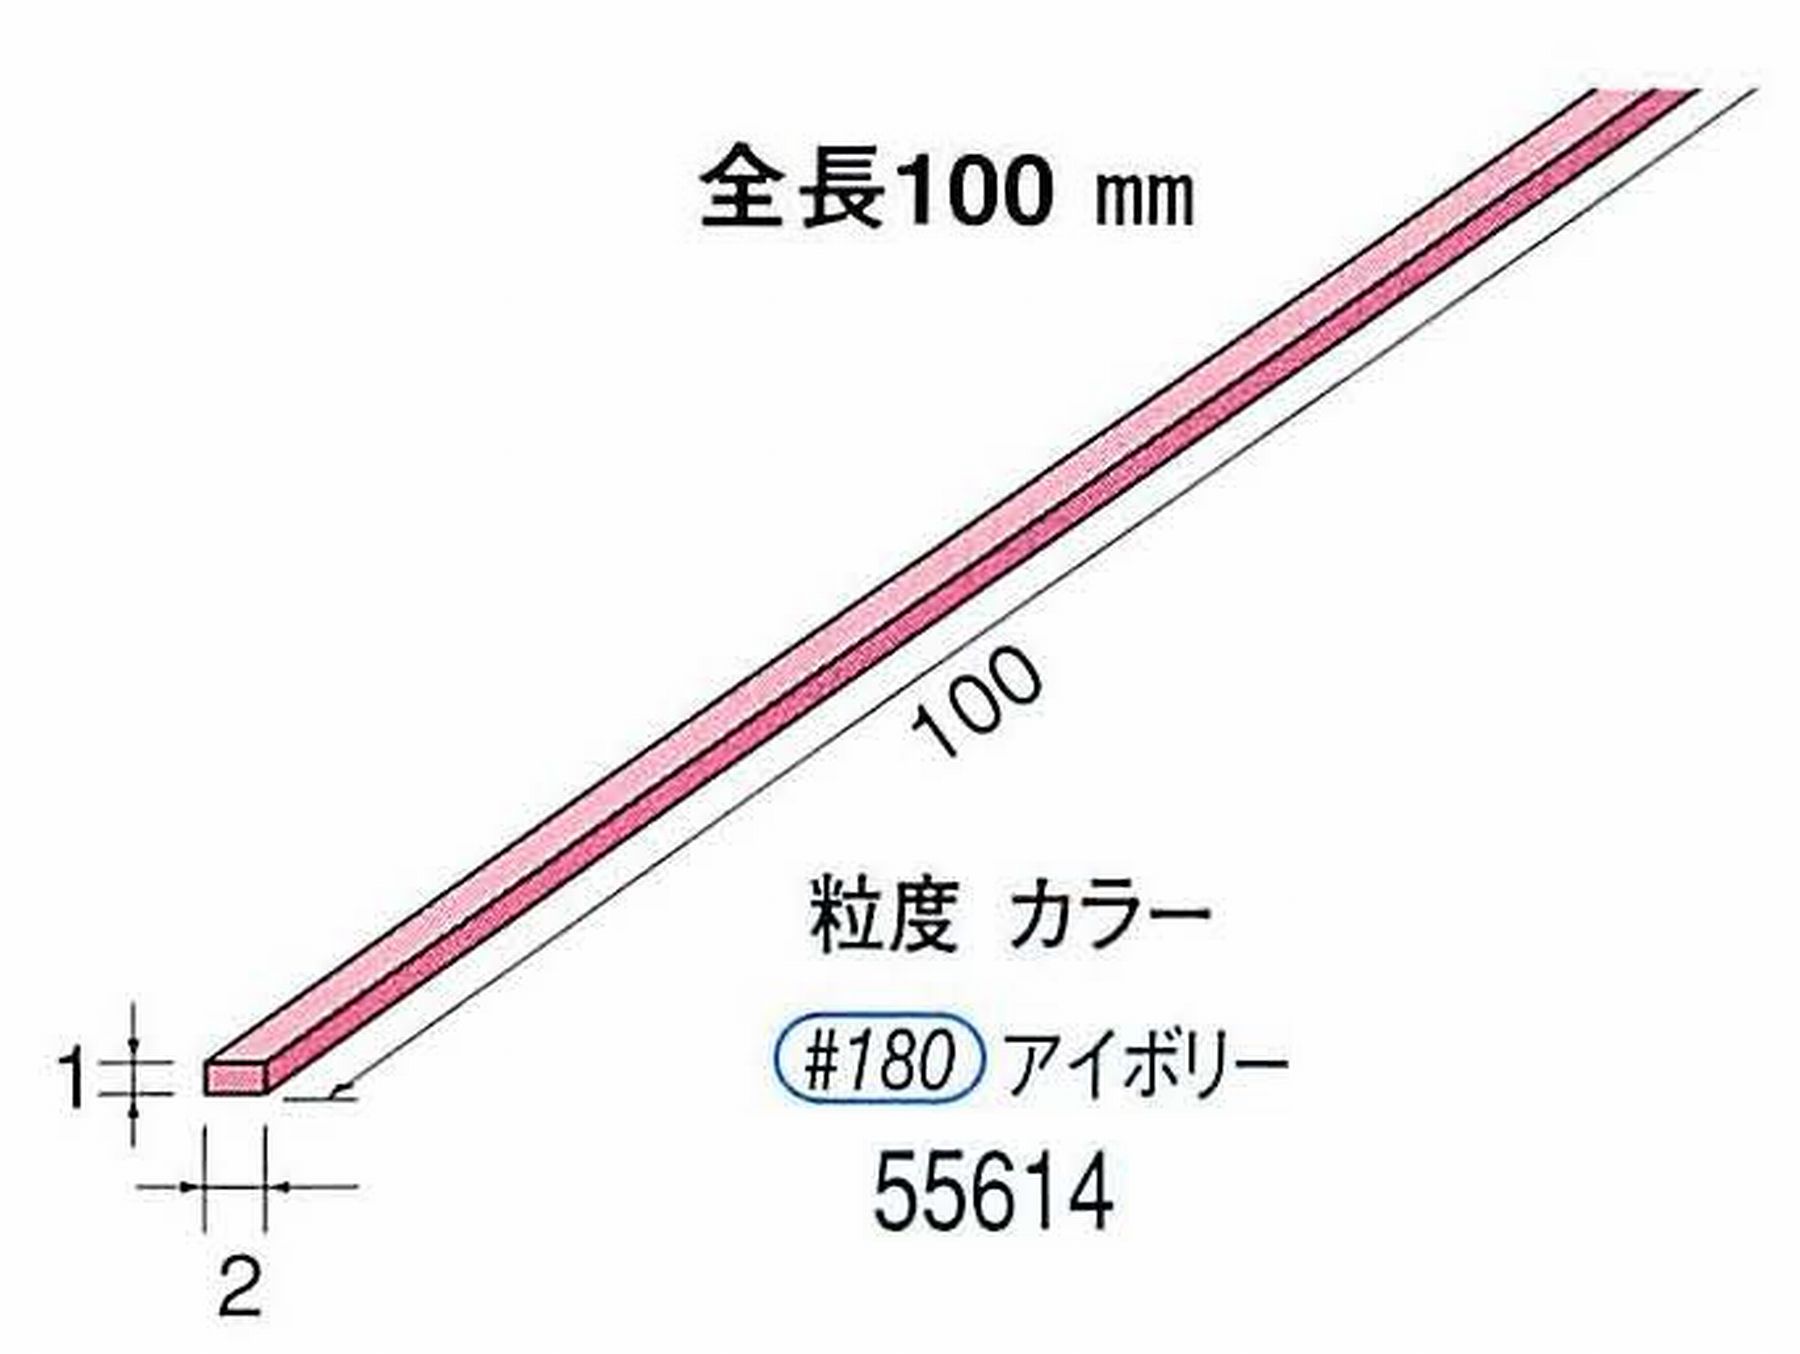 ナカニシ/NAKANISHI セラファイバー砥石 全長100mm アイボリー 55614